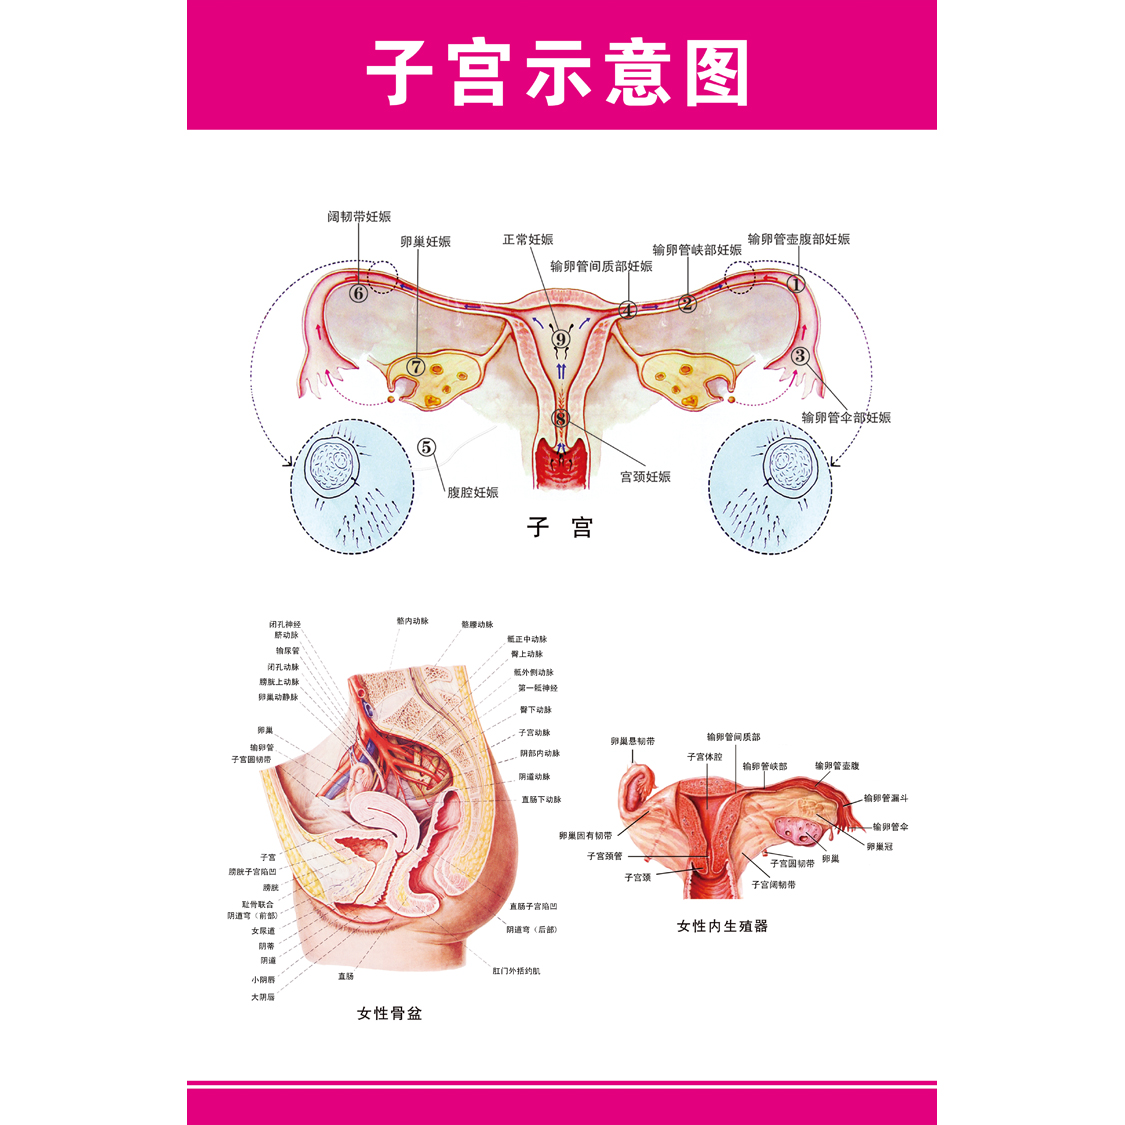 女性生殖器解剖图 医院宣传海报挂图子宫 妇科海报宫颈疾病示意图